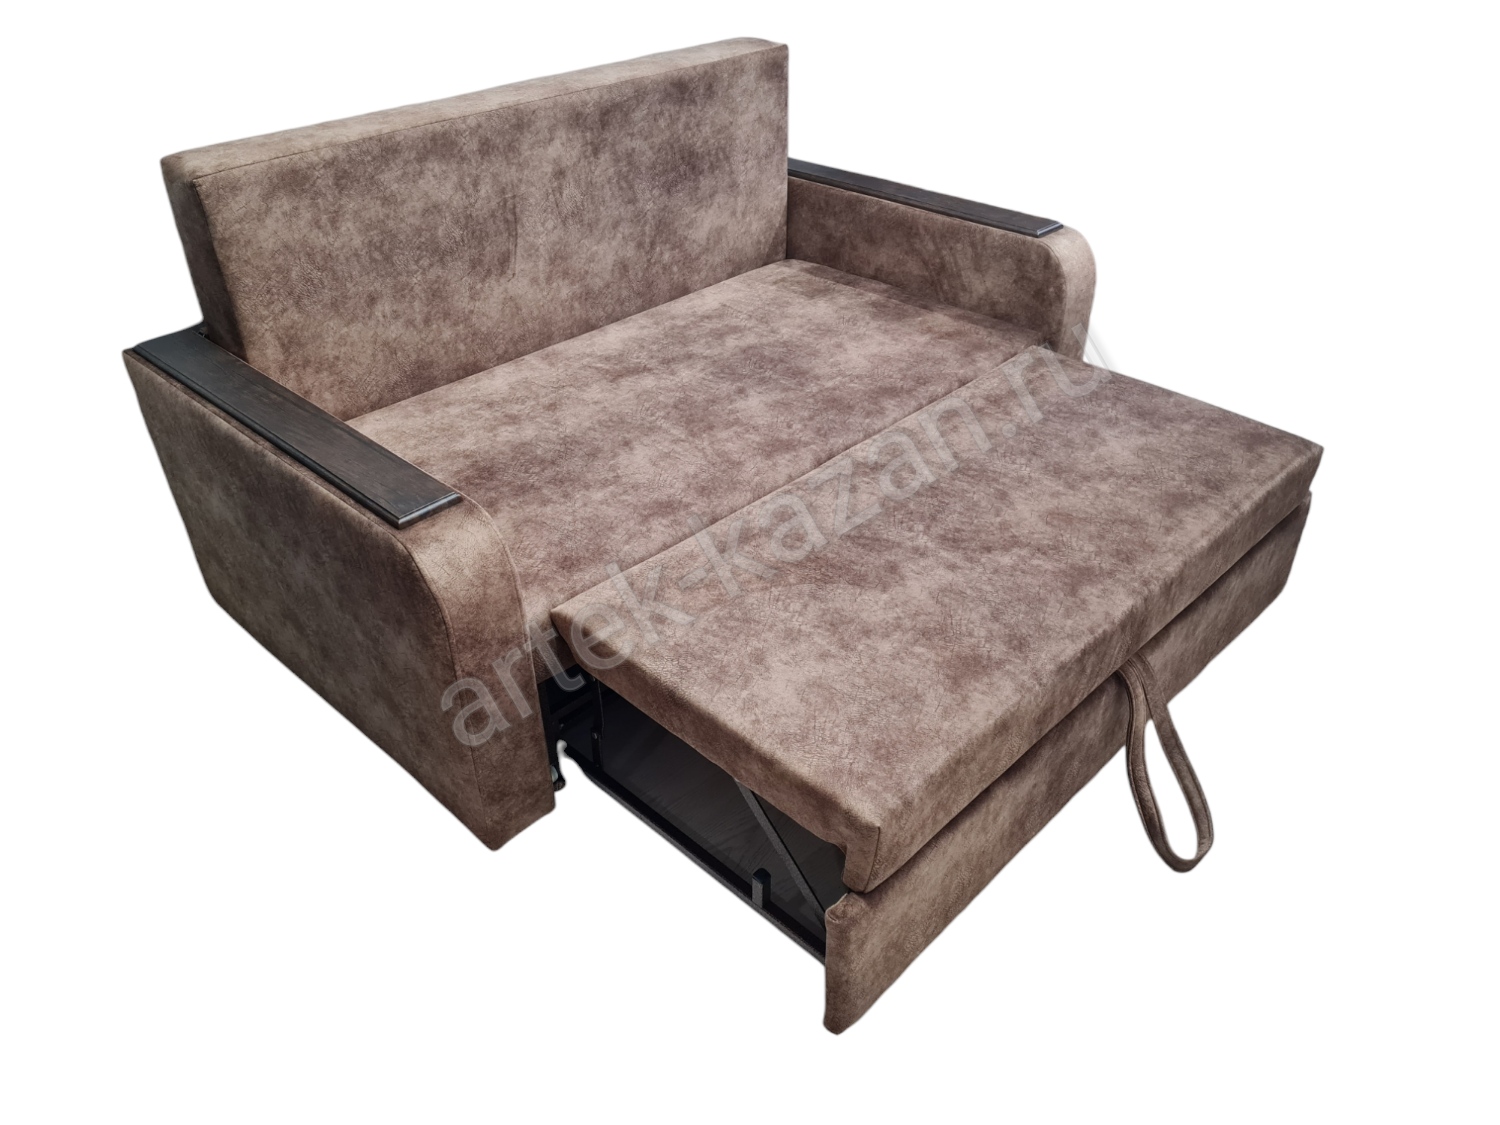 Фото 5. Купить недорогой диван по низкой цене от производителя можно у нас.